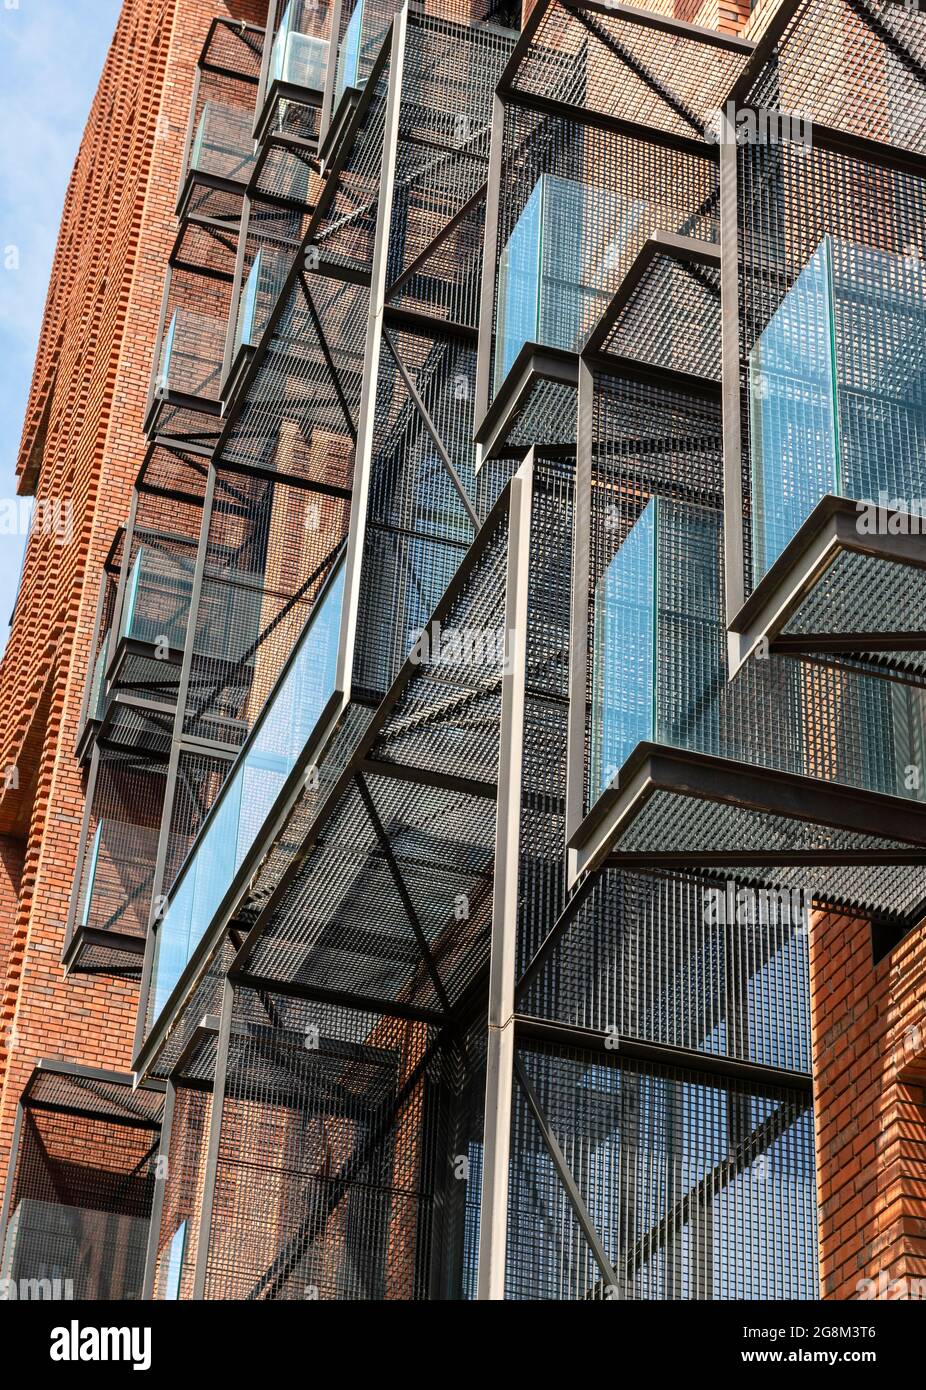 Architektonische Details. Freitragende Balkone mit Metallgitter und Ziegelfassade für das Wohngebäude des Red Apple in Sofia, Bulgarien Stockfoto